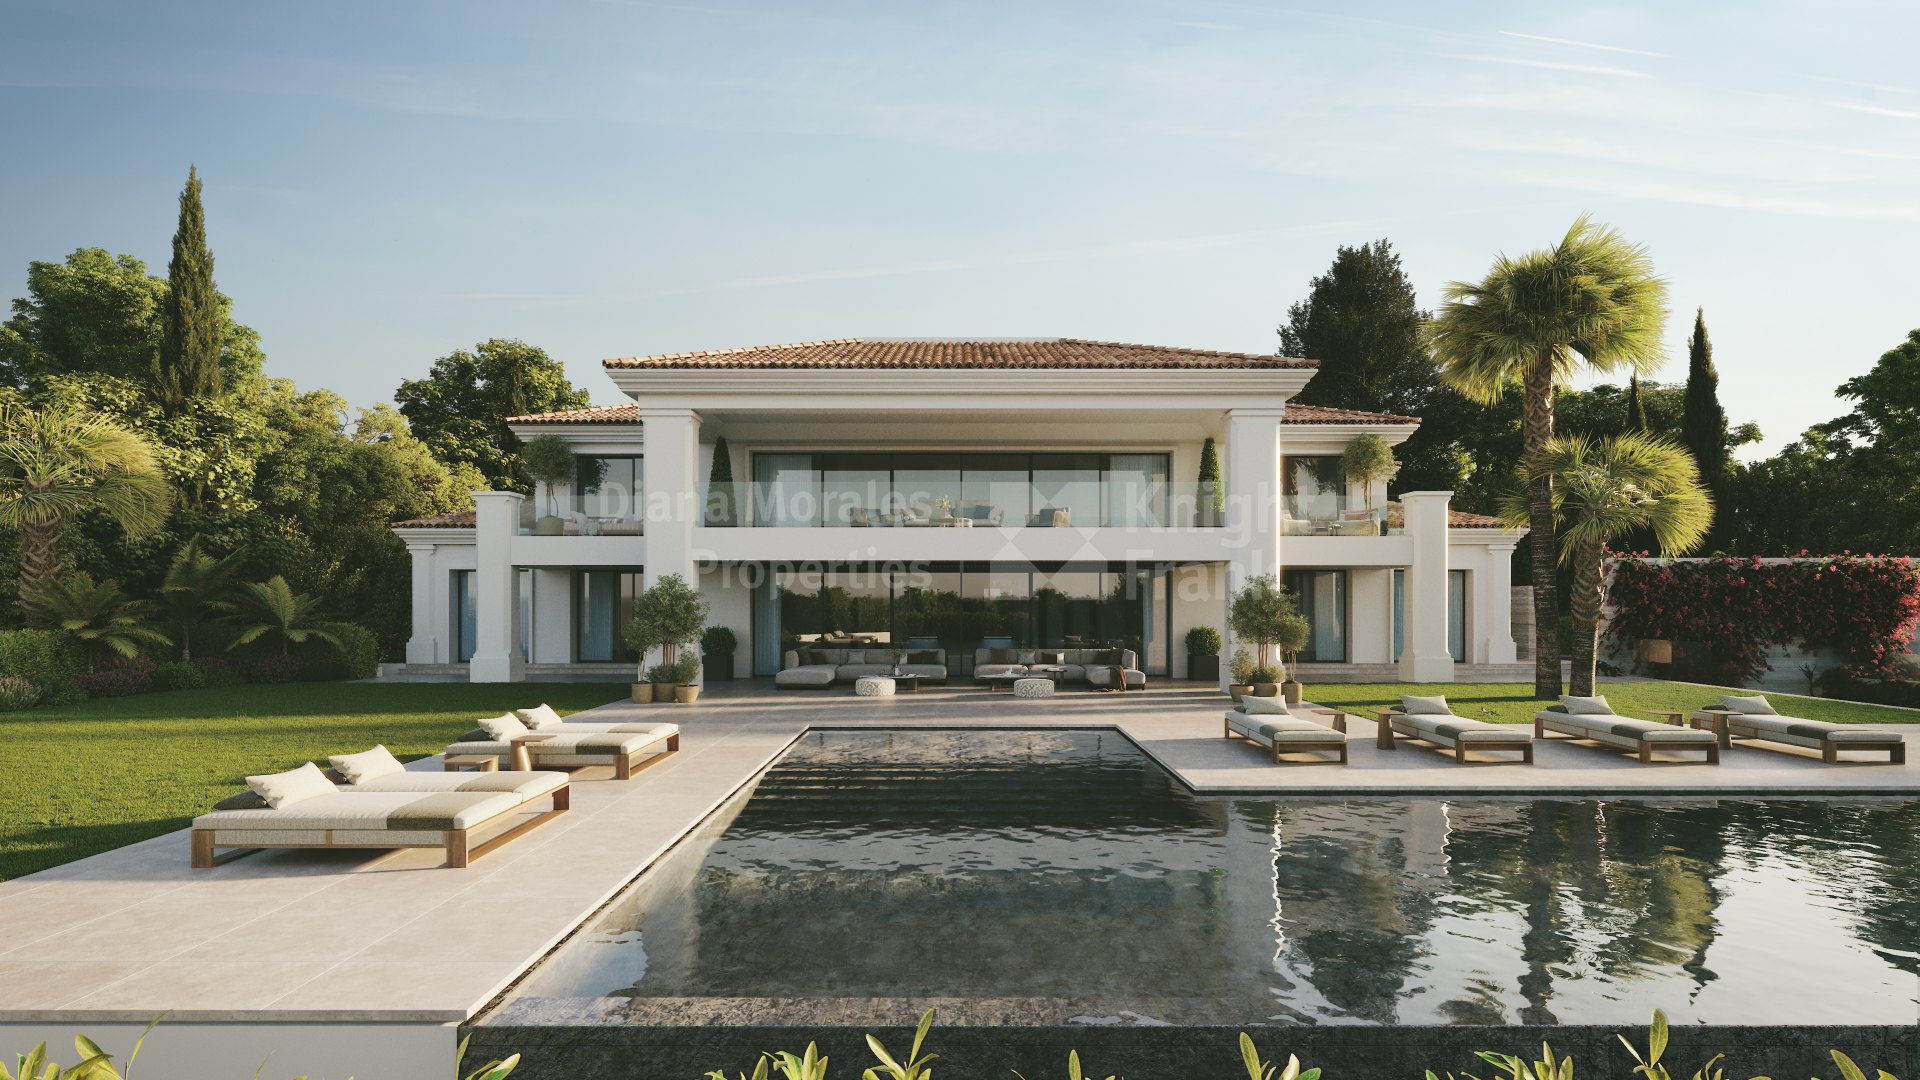 La Quinta, Demnächst verfügbar: Villa HG, das unbekannte Juwel des Golftals